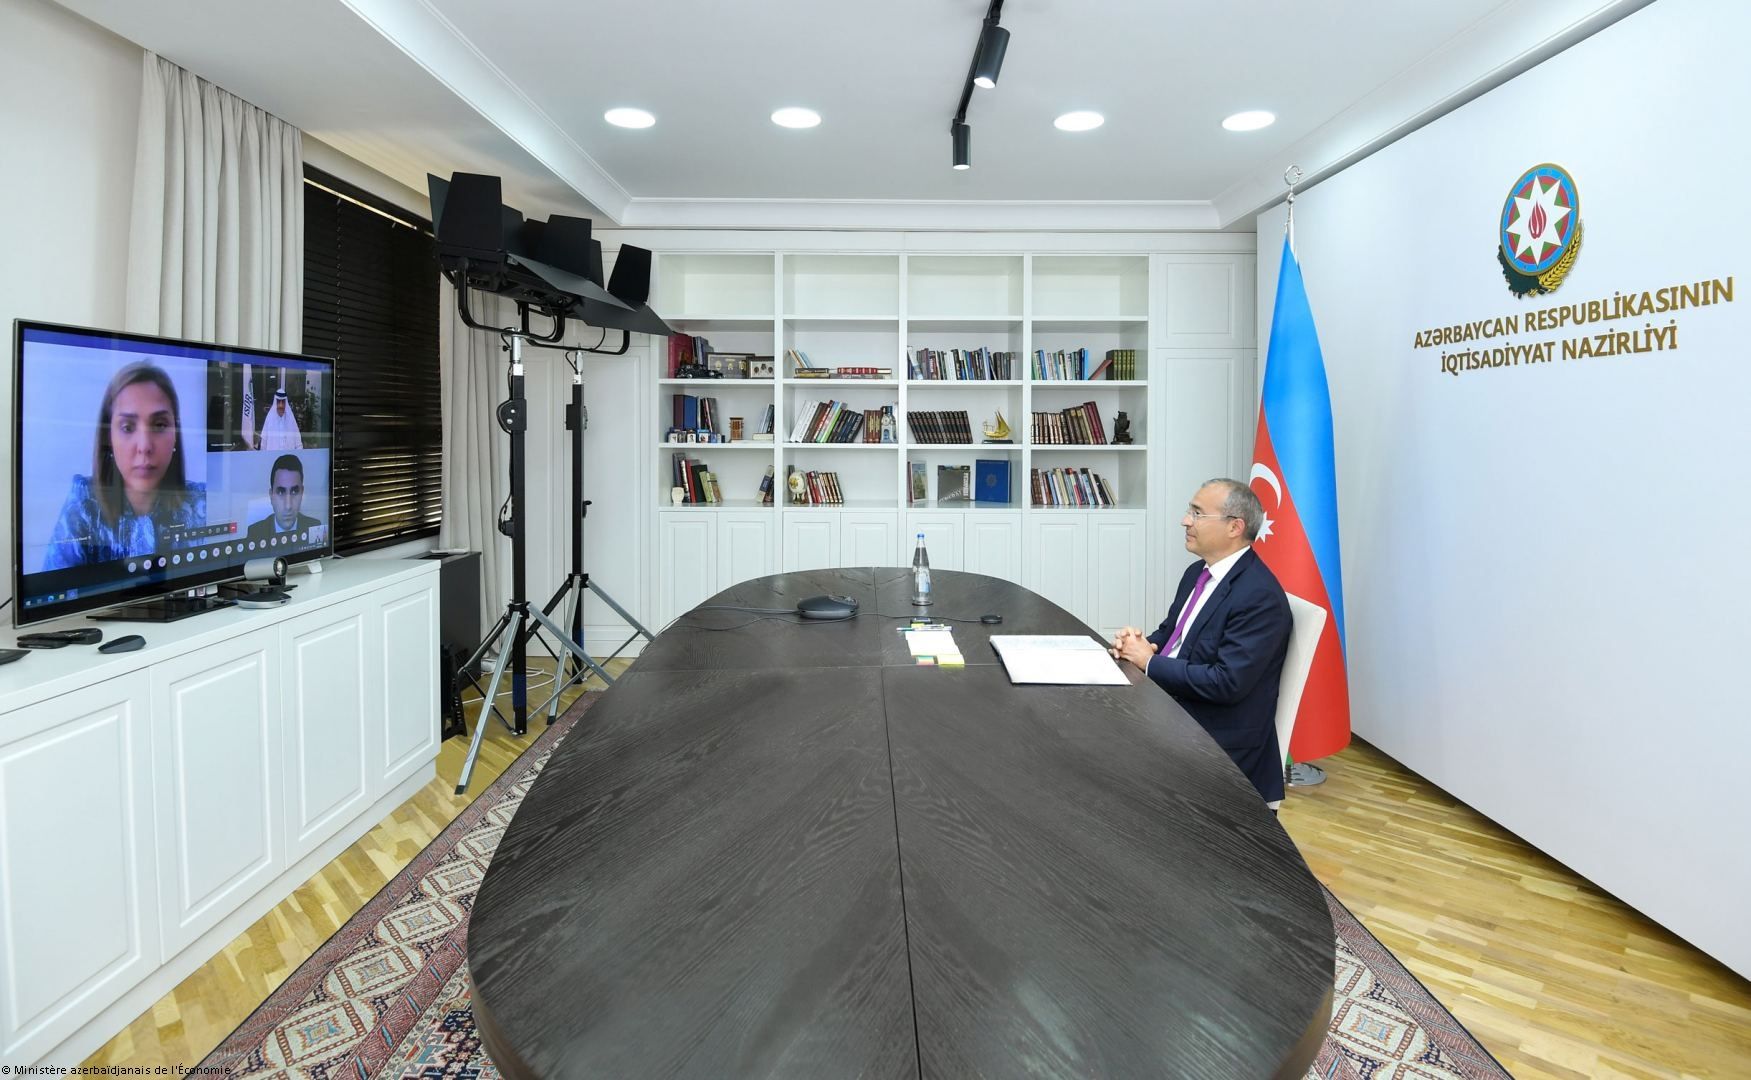 Les investissements de la Banque islamique de développement dans l'économie azerbaïdjanaise ont atteint environ 1 milliard de dollars